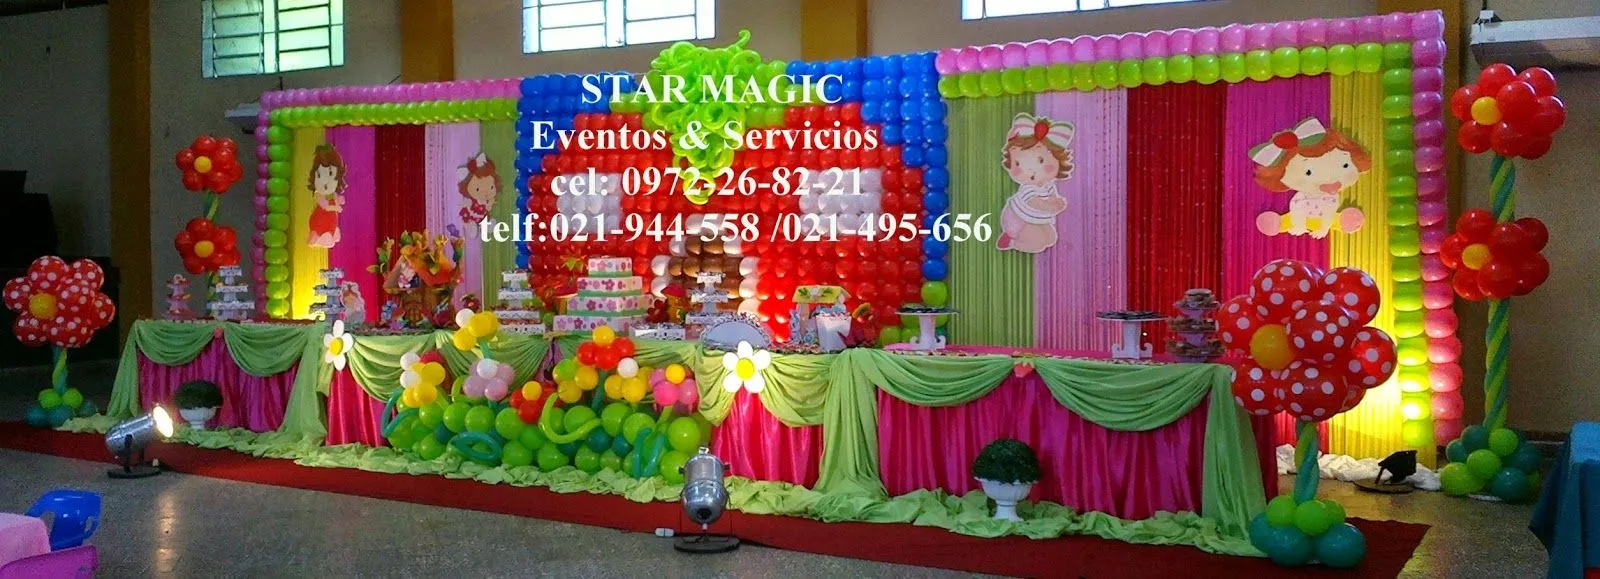 STAR MAGIC Decoracion de Fiestas y Eventos: decoraciones ...